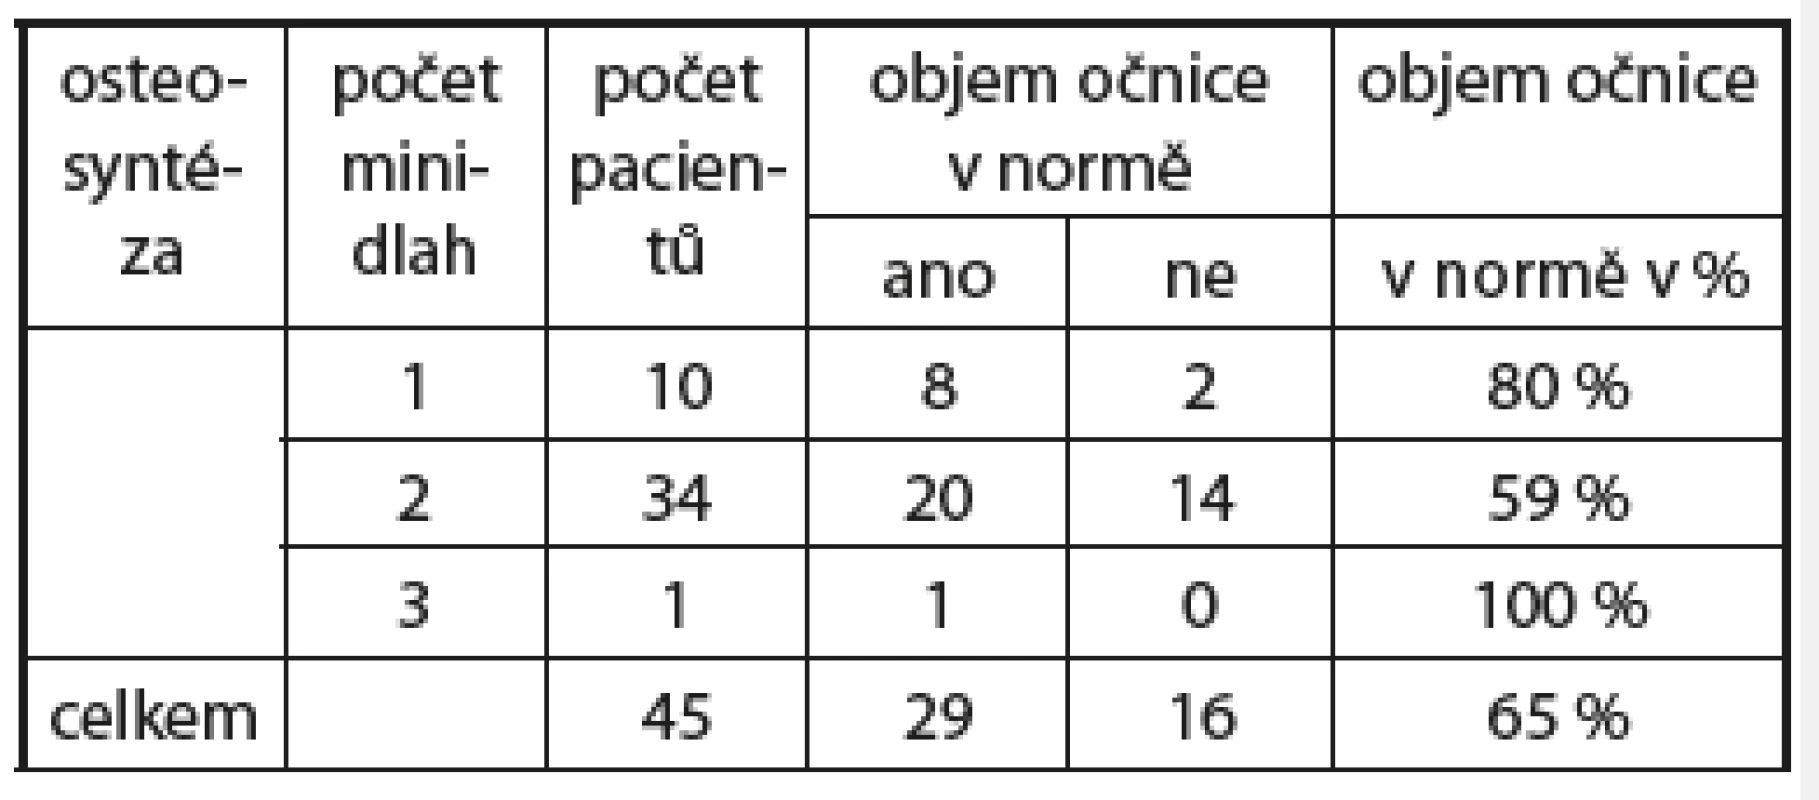 Objem očnice v normě (ano/ne) ve vztahu k počtu minidlah